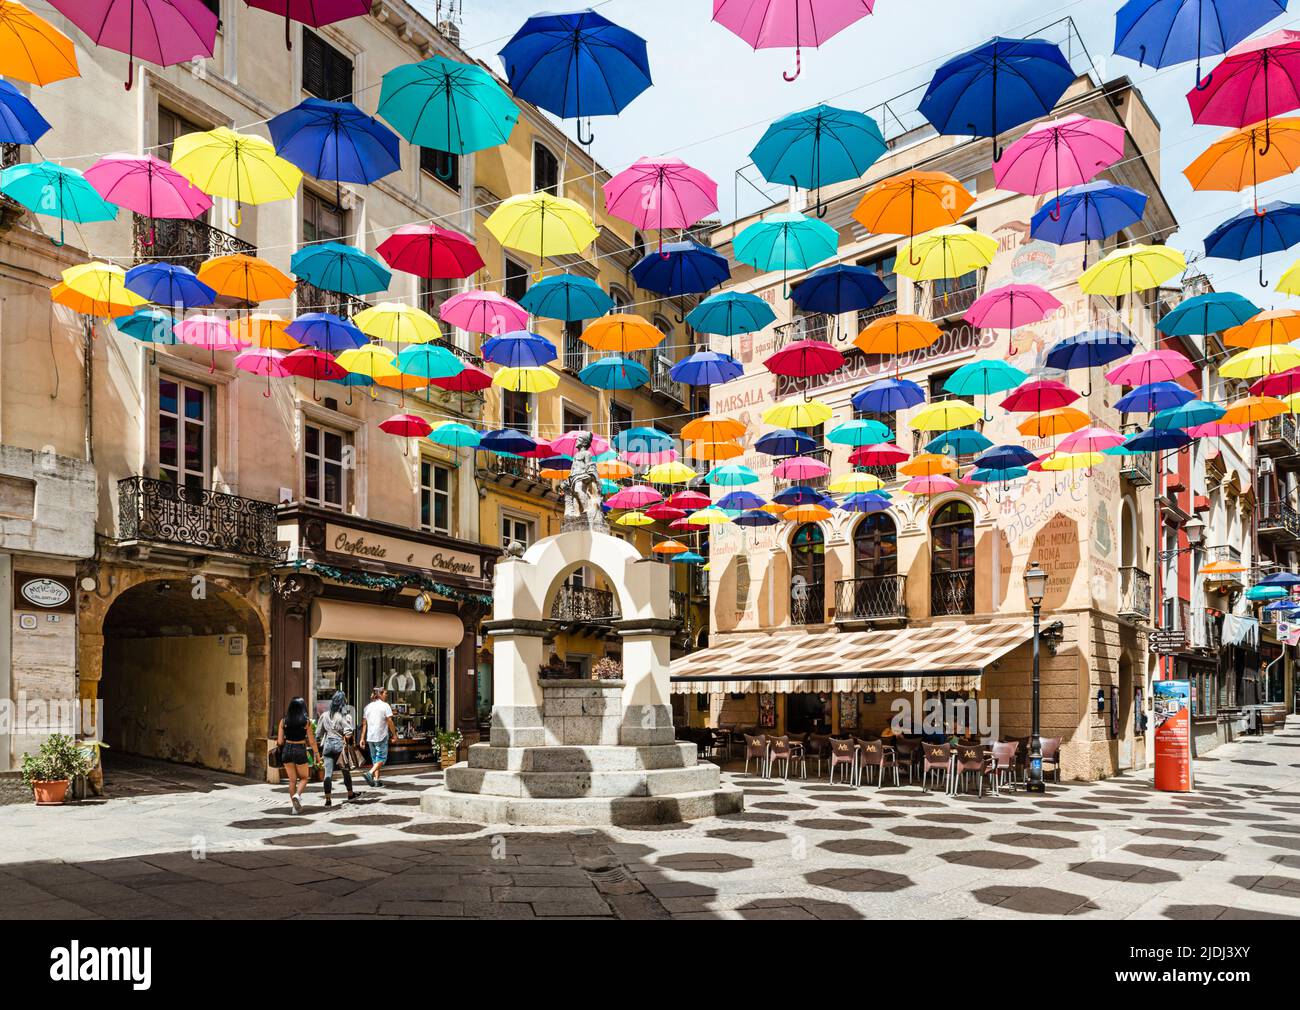 Gli ombrelloni colorati proteggono i passanti in Piazza Lamarmora, circondata da case storiche nel centro storico di Iglesias, nel sud-ovest della Sardegna, Italia Foto Stock